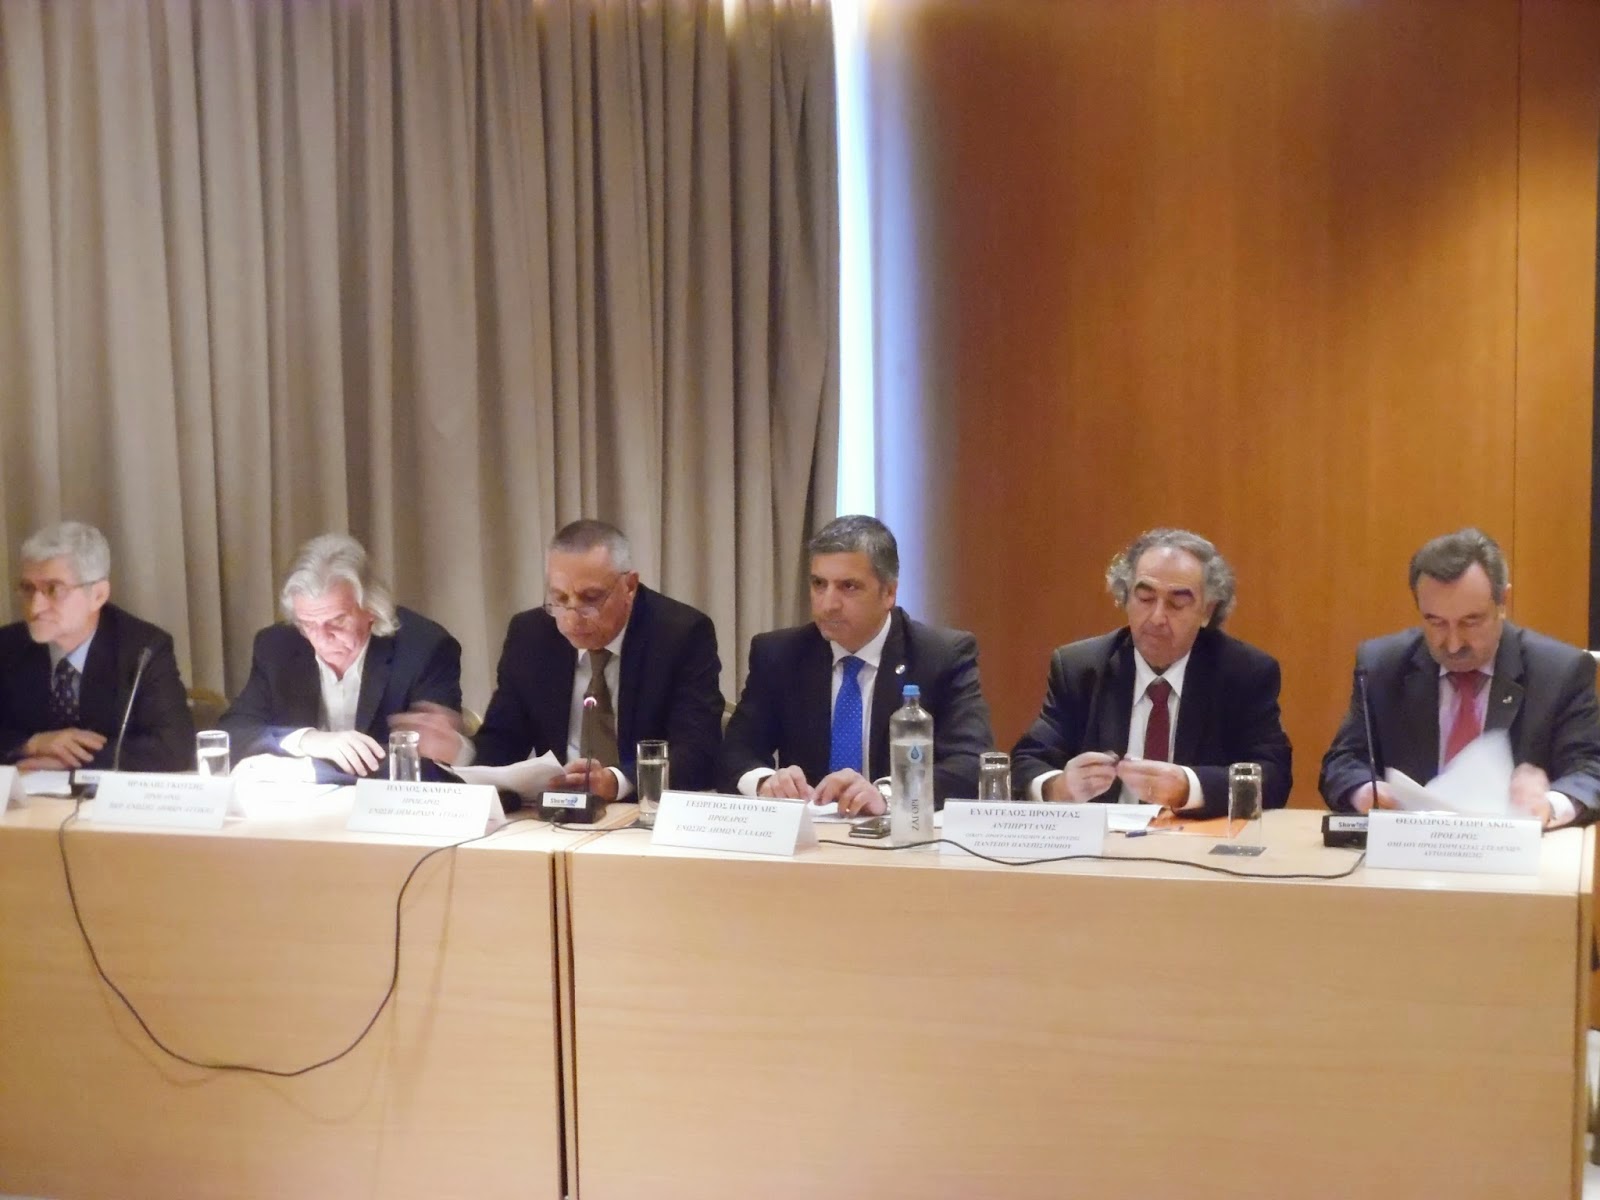 Συμμετοχή του προέδρου της ΚΕΔΕ Γ. Πατούλη στο συνέδριο για τη συνταγματική αναθεώρηση με σκοπό την αναβάθμιση της αυτοδιοίκησης - Φωτογραφία 1